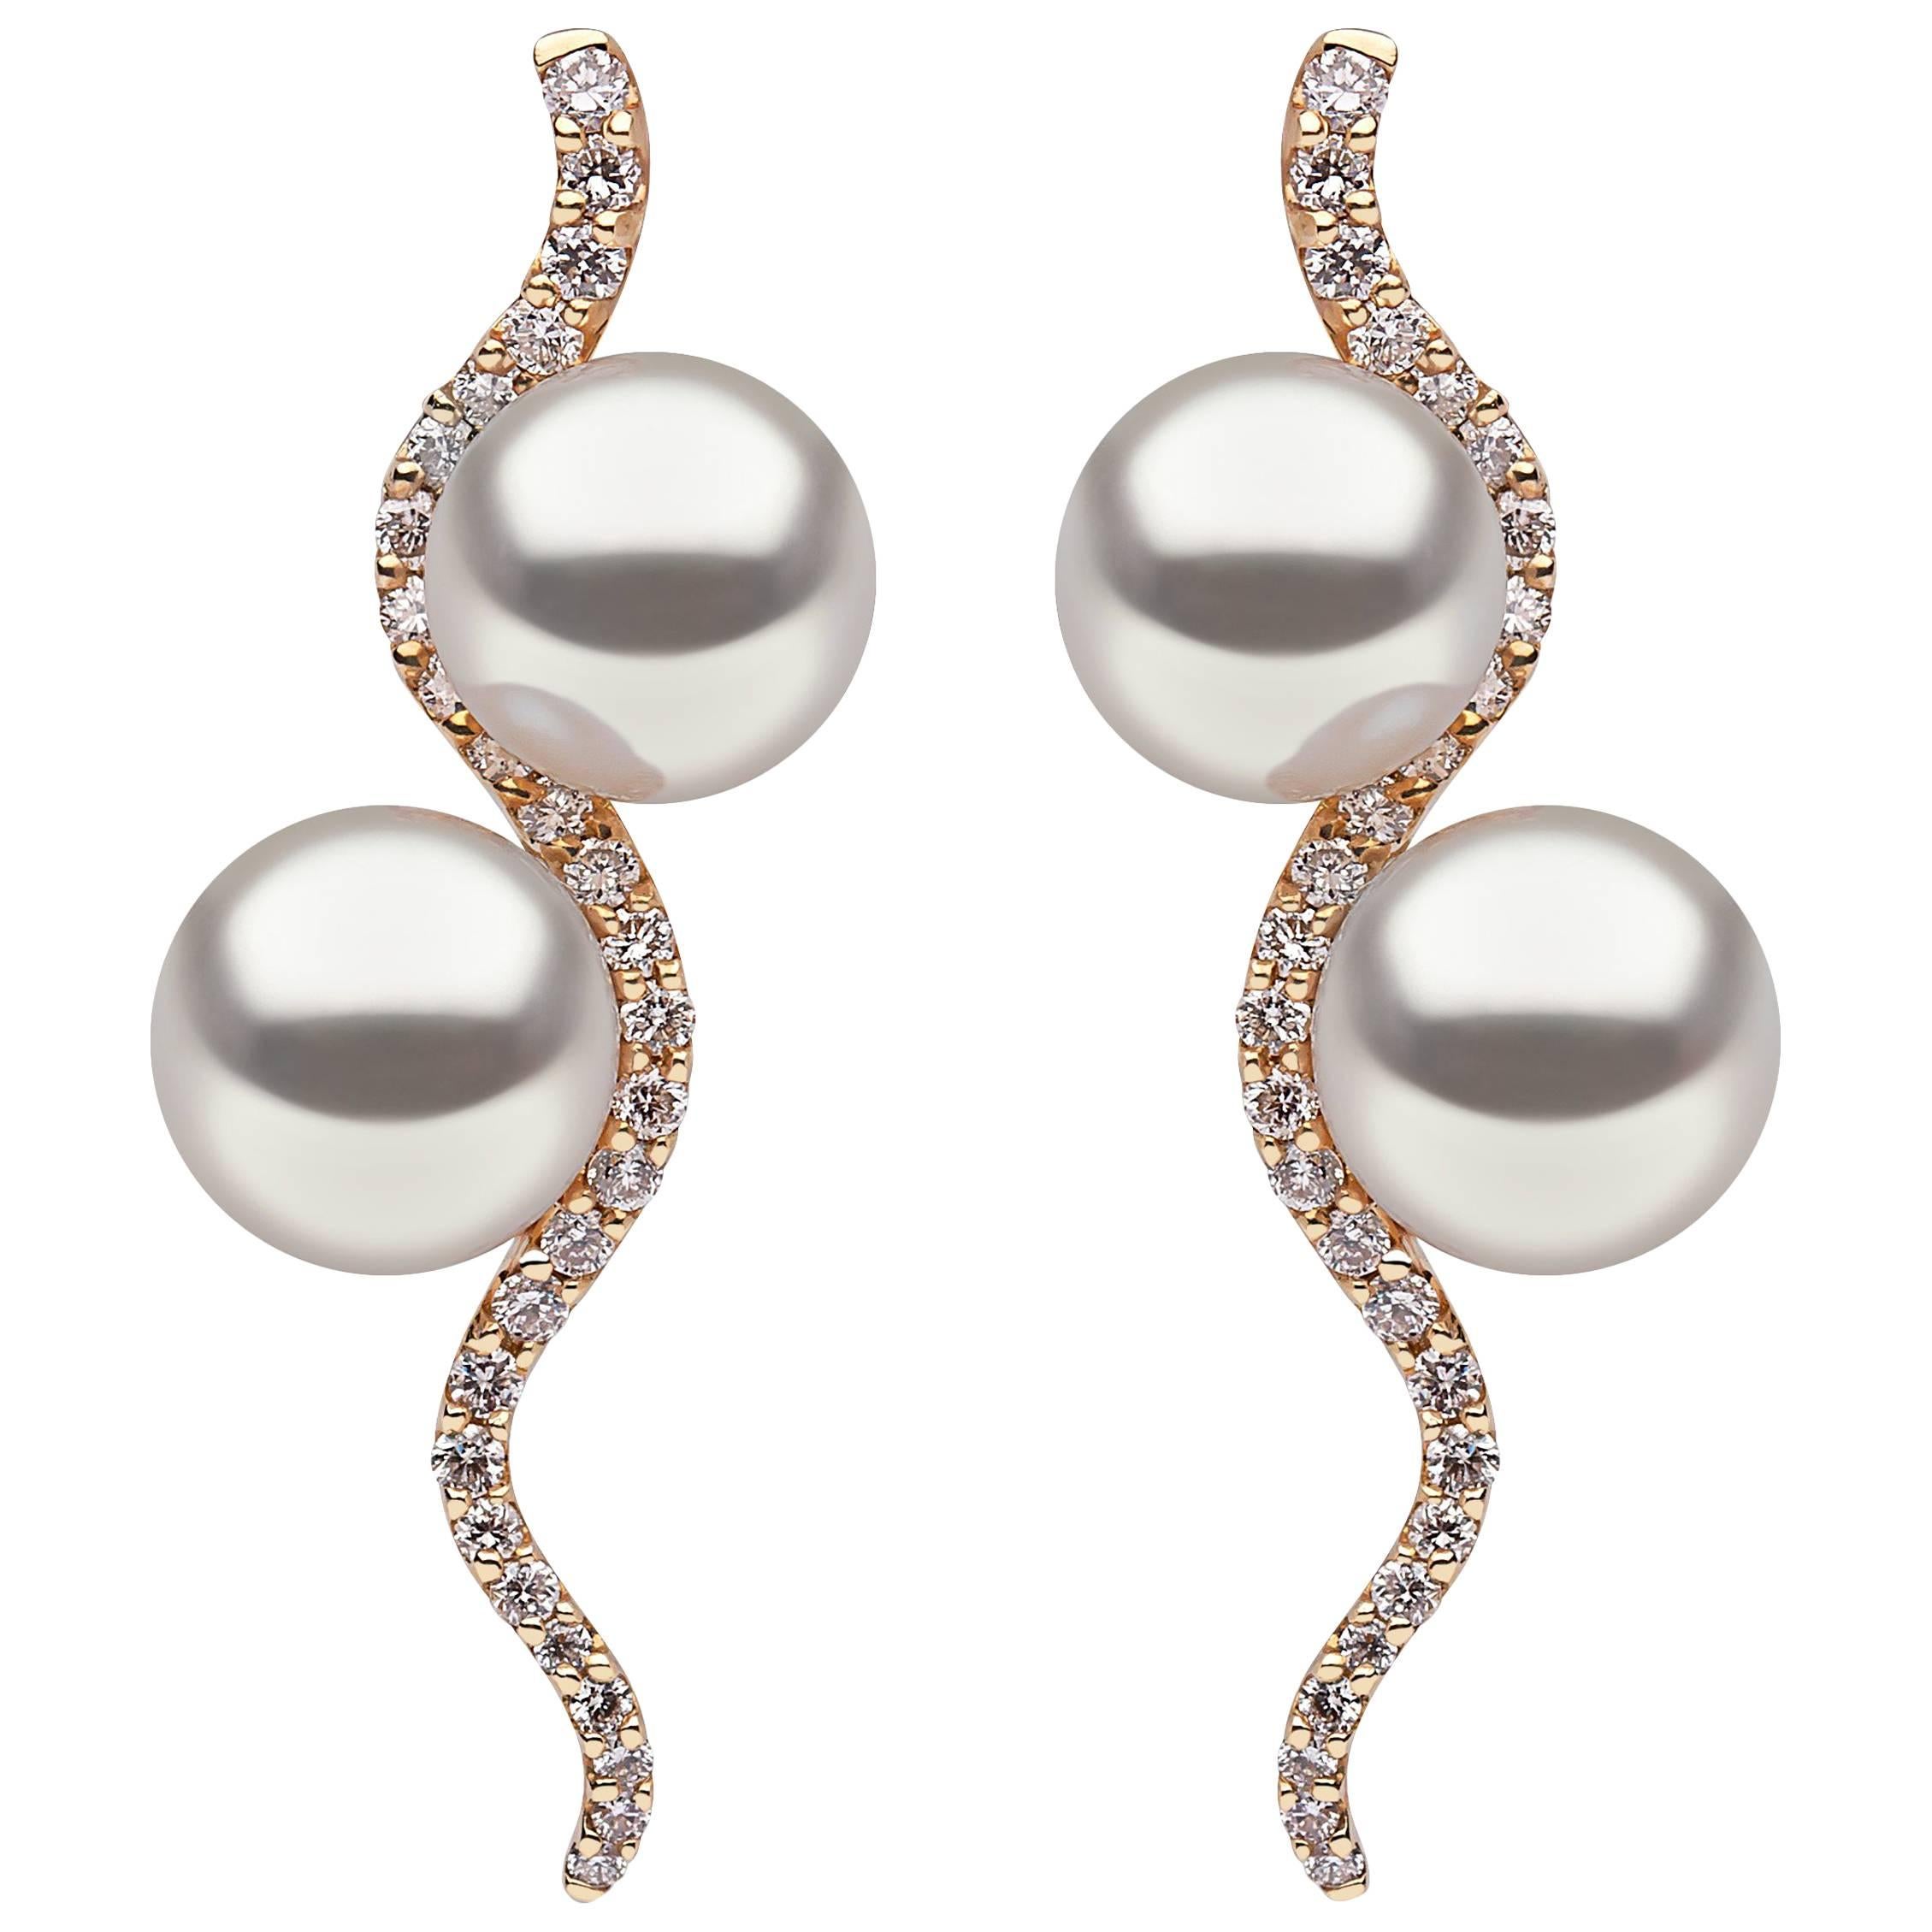 Yoko London Pearl and Diamond Drop Earrings in 18K Yellow Gold